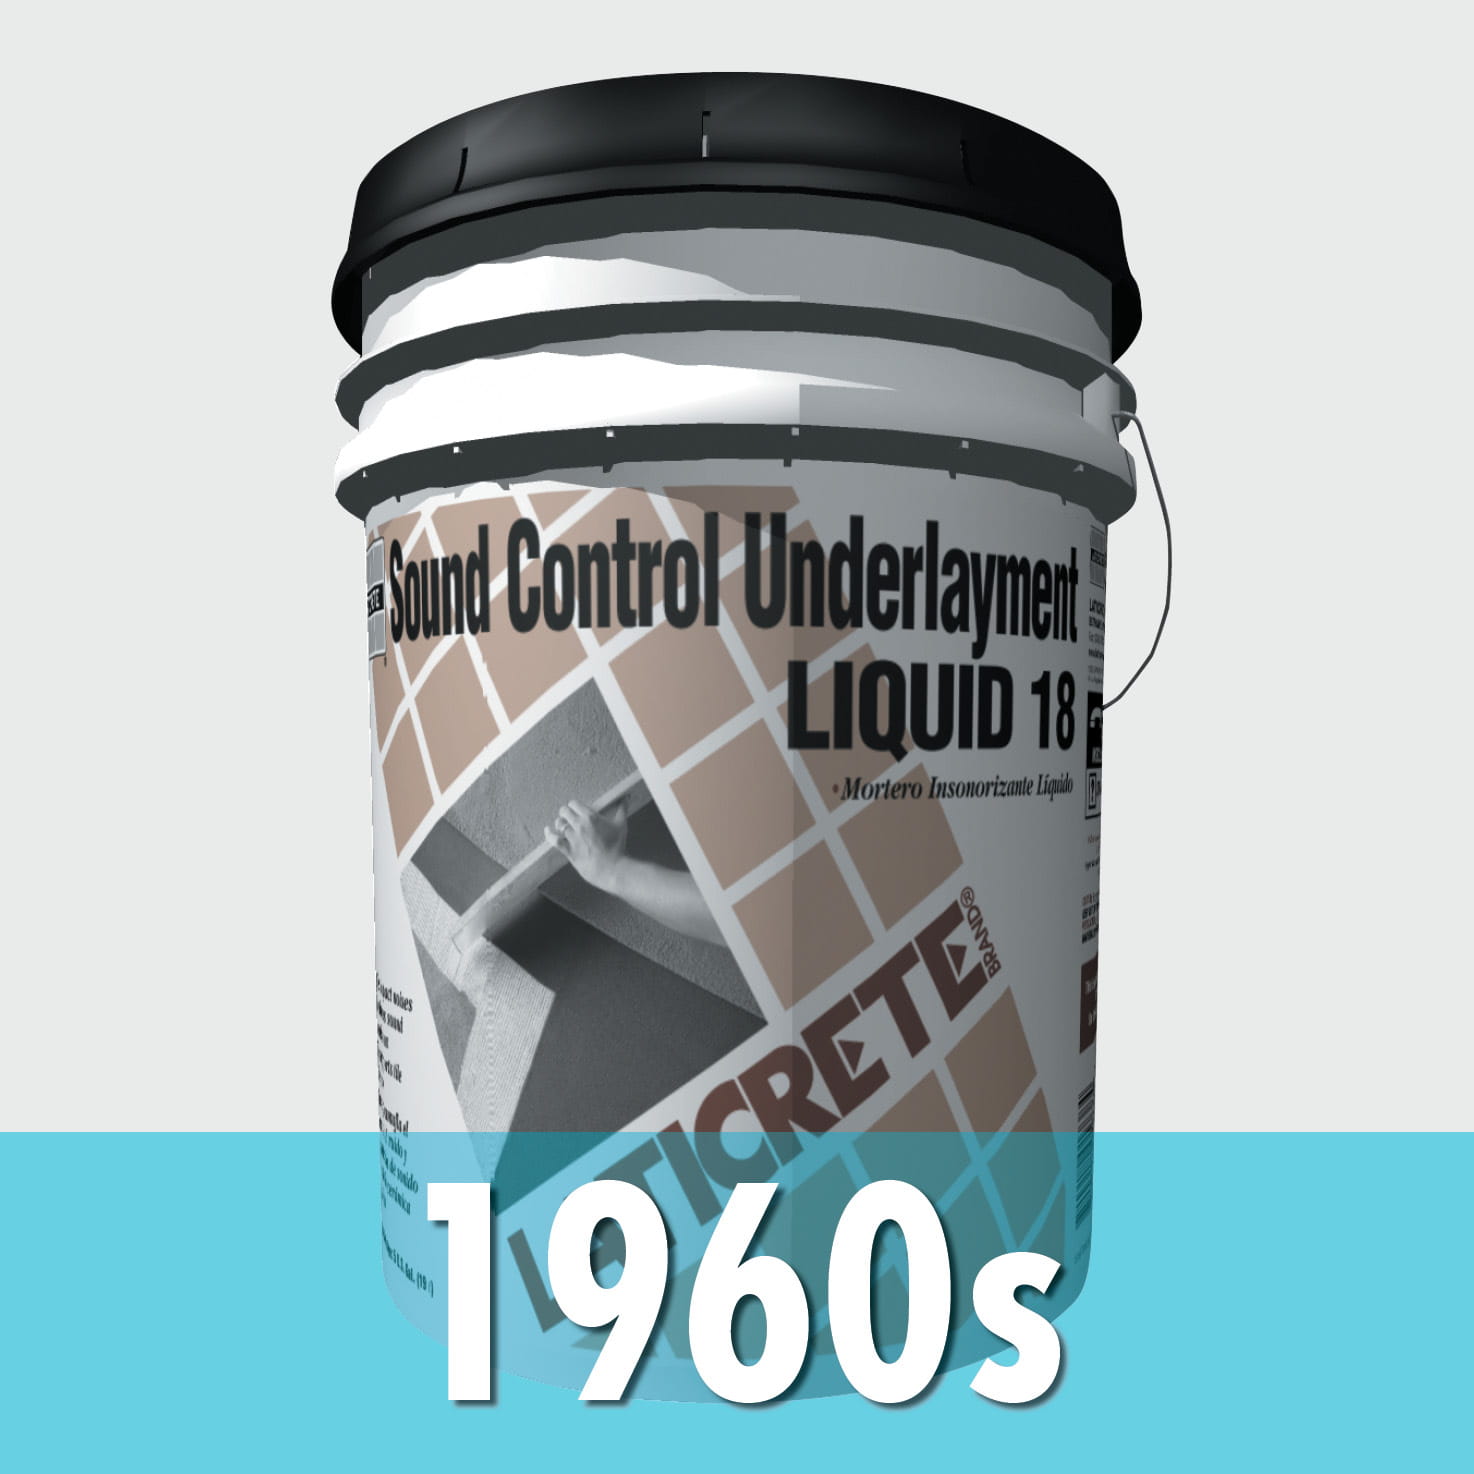 LATICRETE company history 1960s